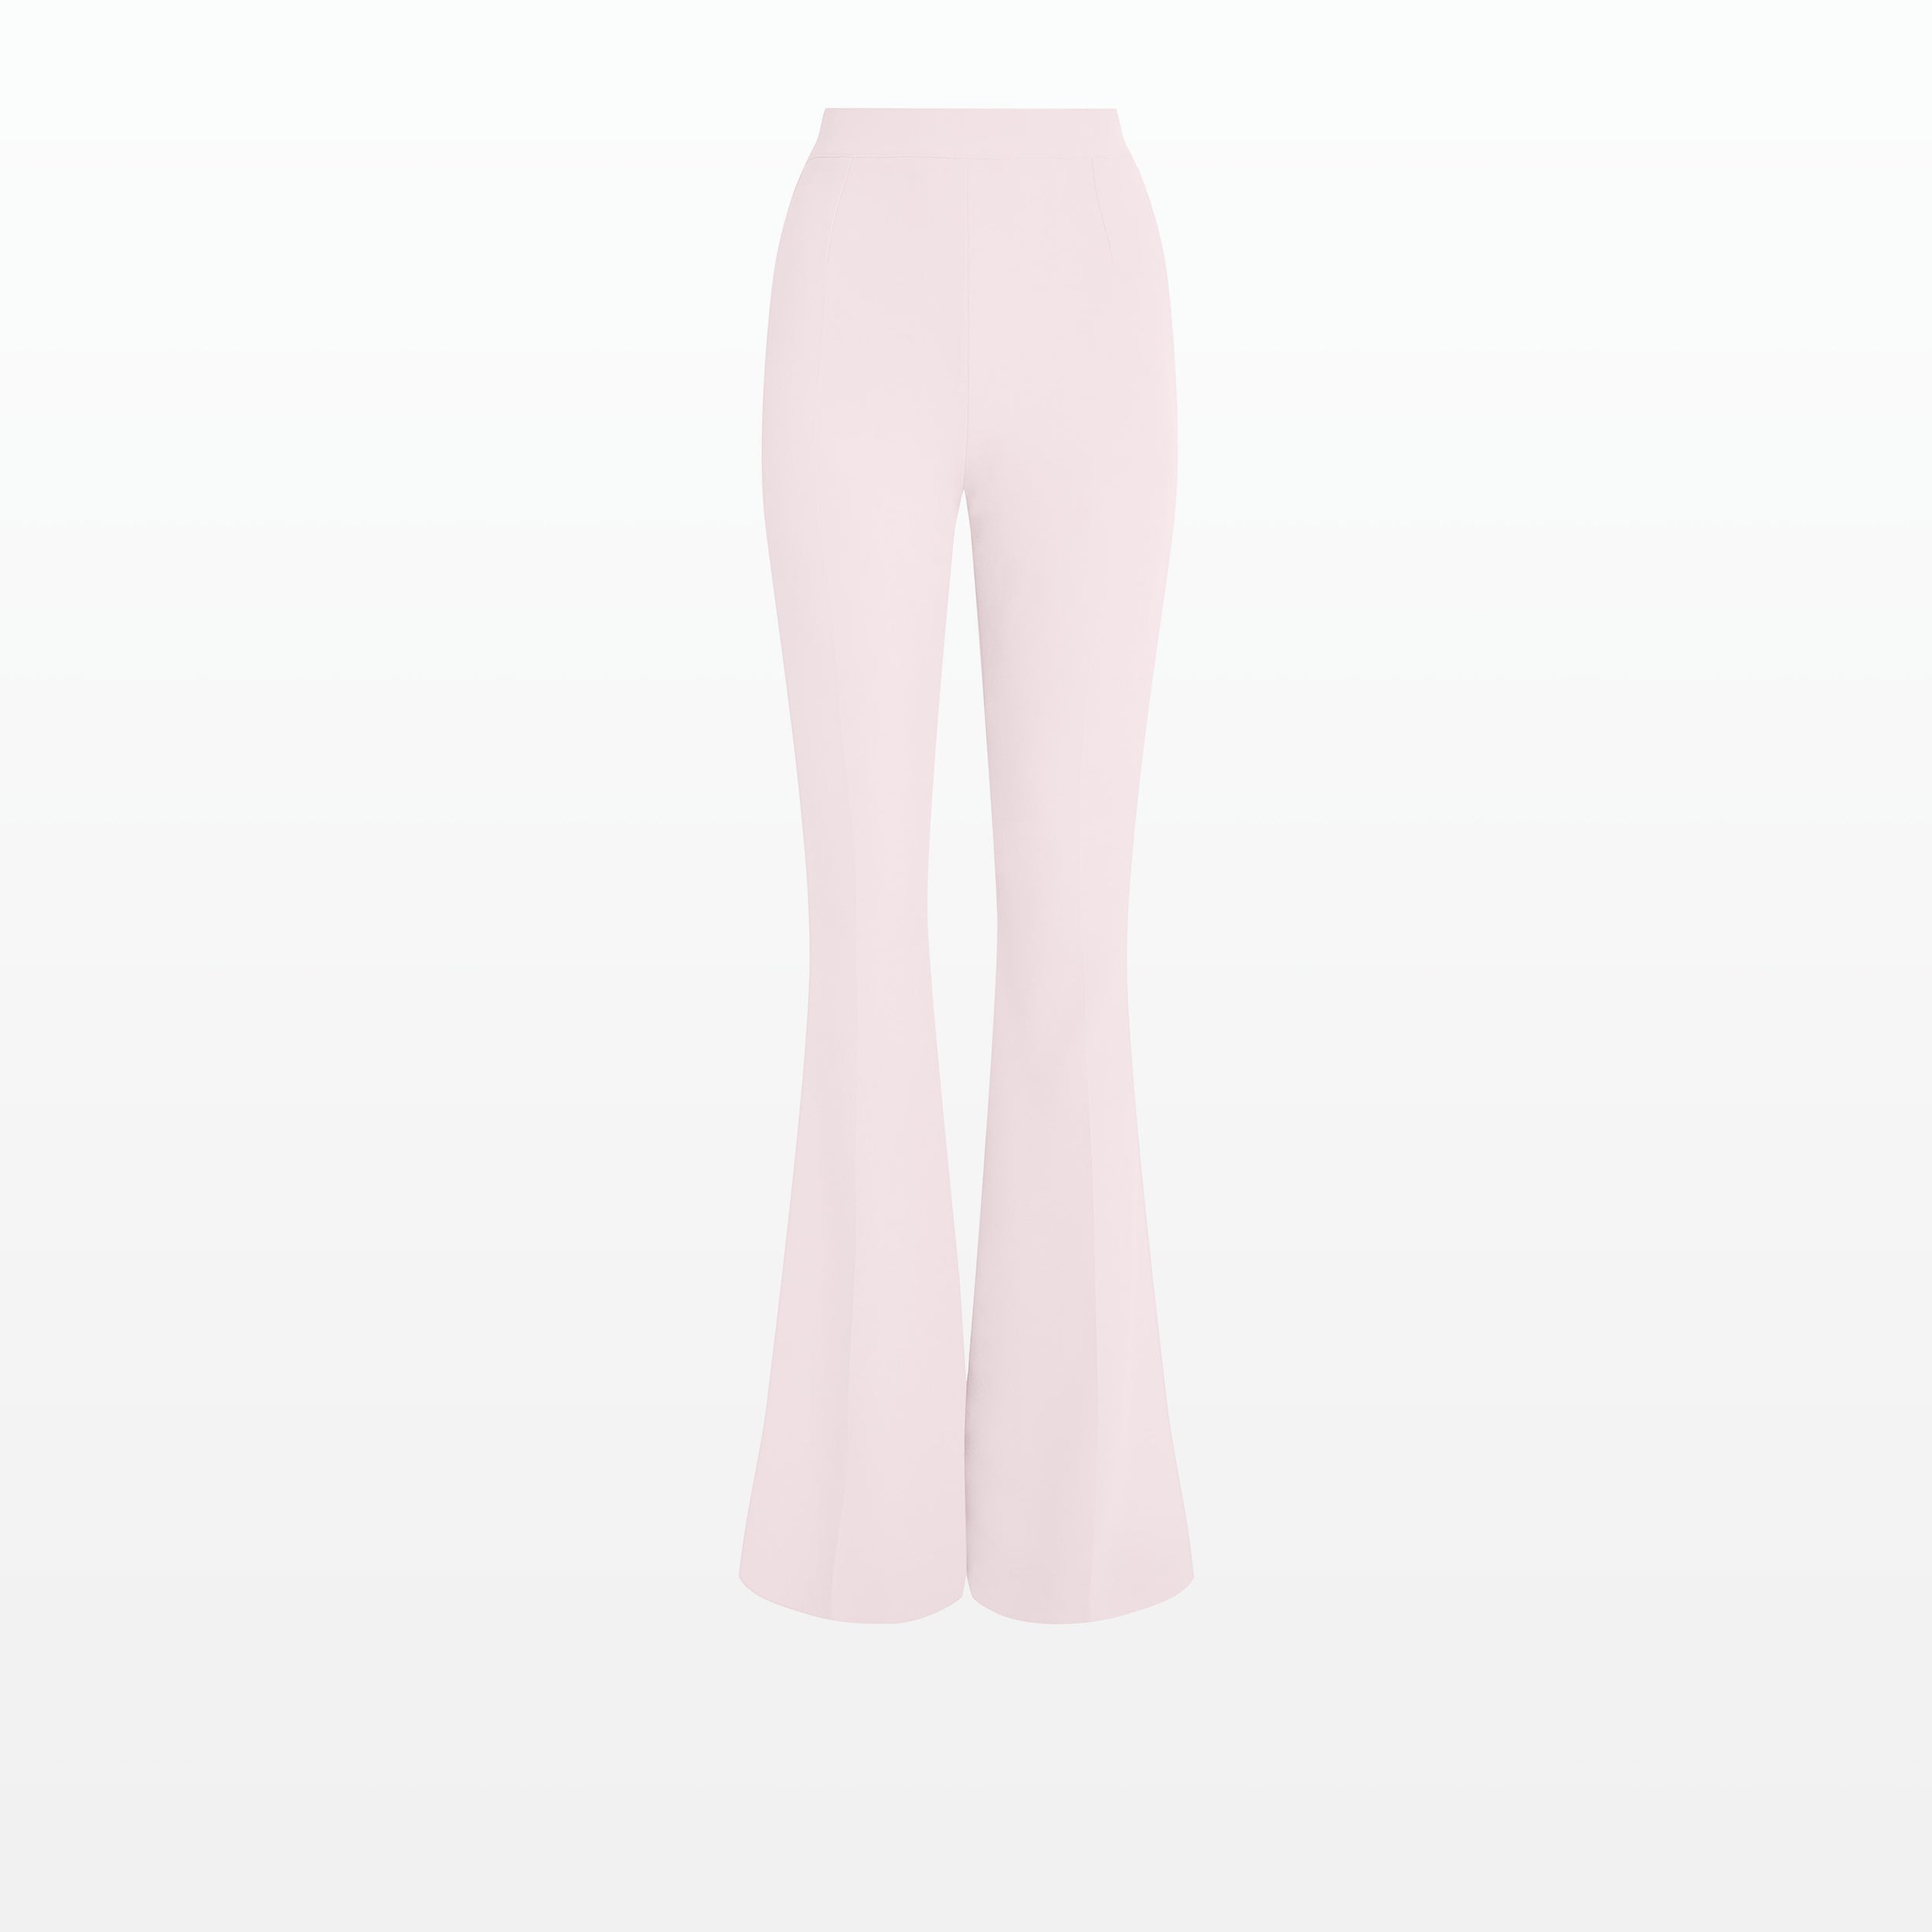 Carrot suiting pants pale pink – Les Jumelles